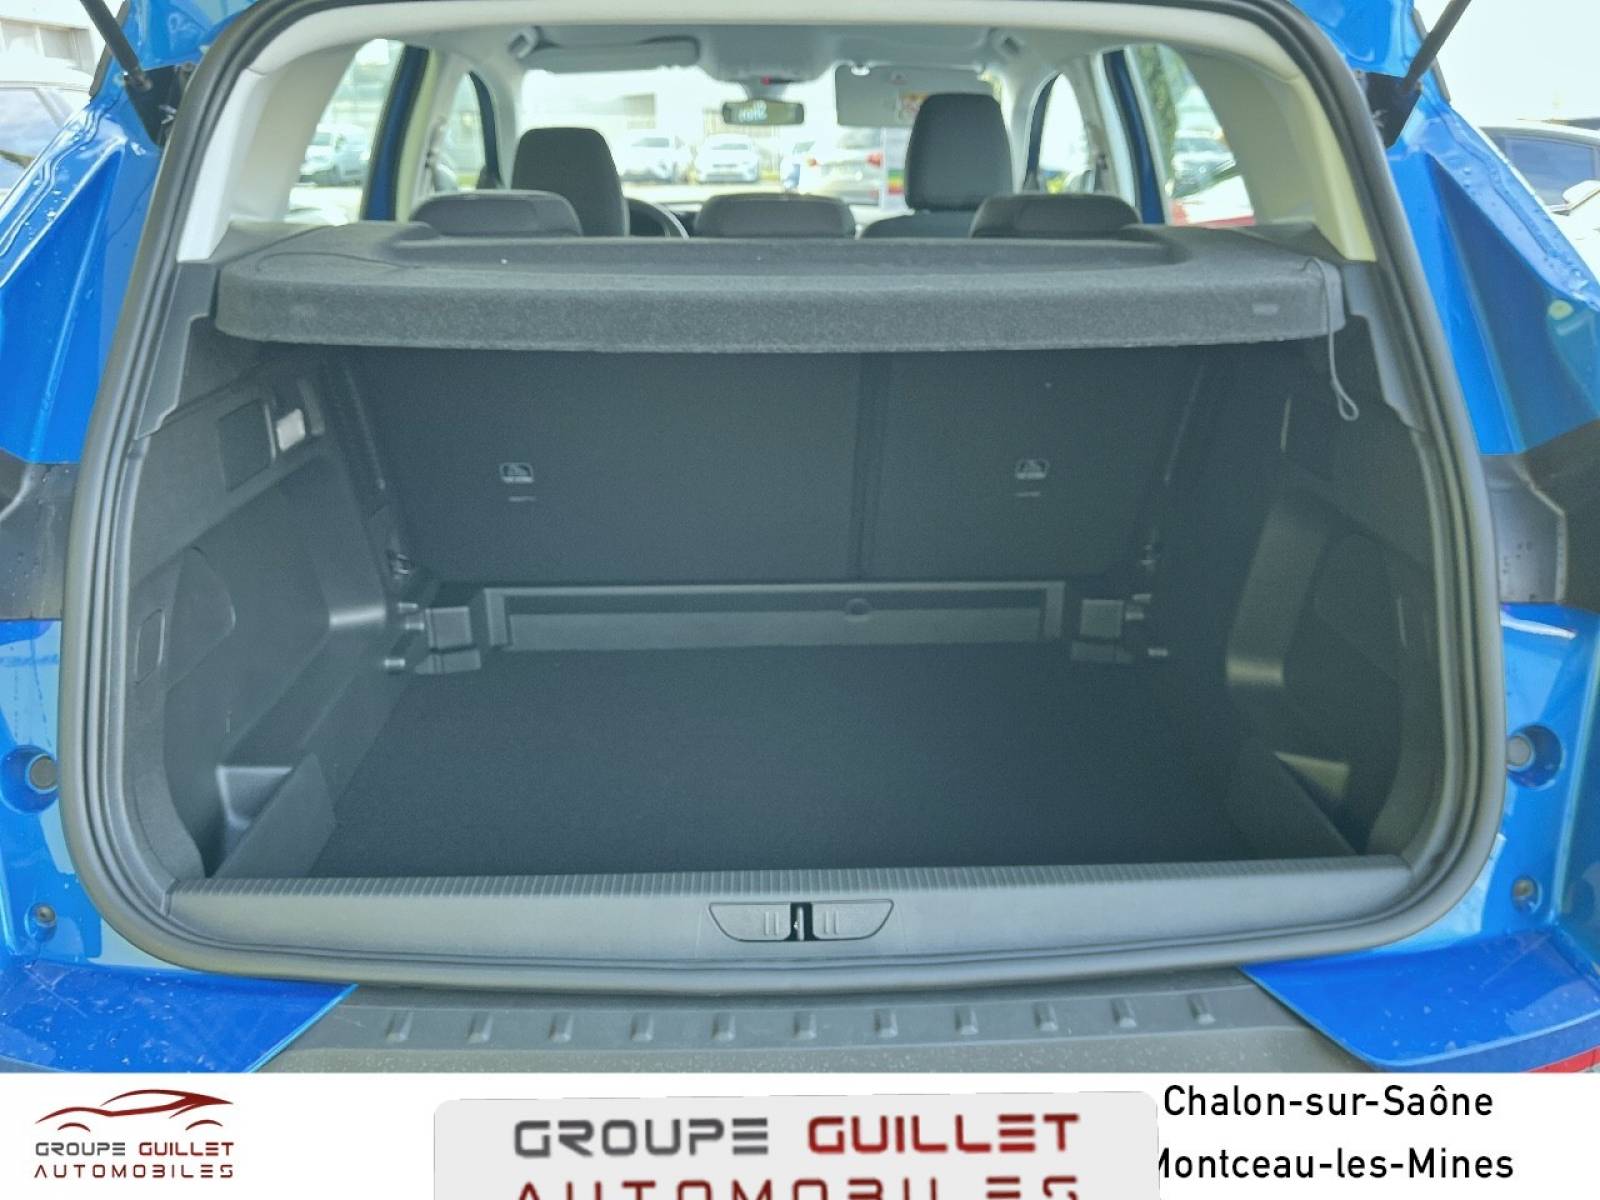 OPEL Grandland 1.2 Turbo 130 ch - véhicule d'occasion - Groupe Guillet - Opel Magicauto Montceau - 71300 - Montceau-les-Mines - 6